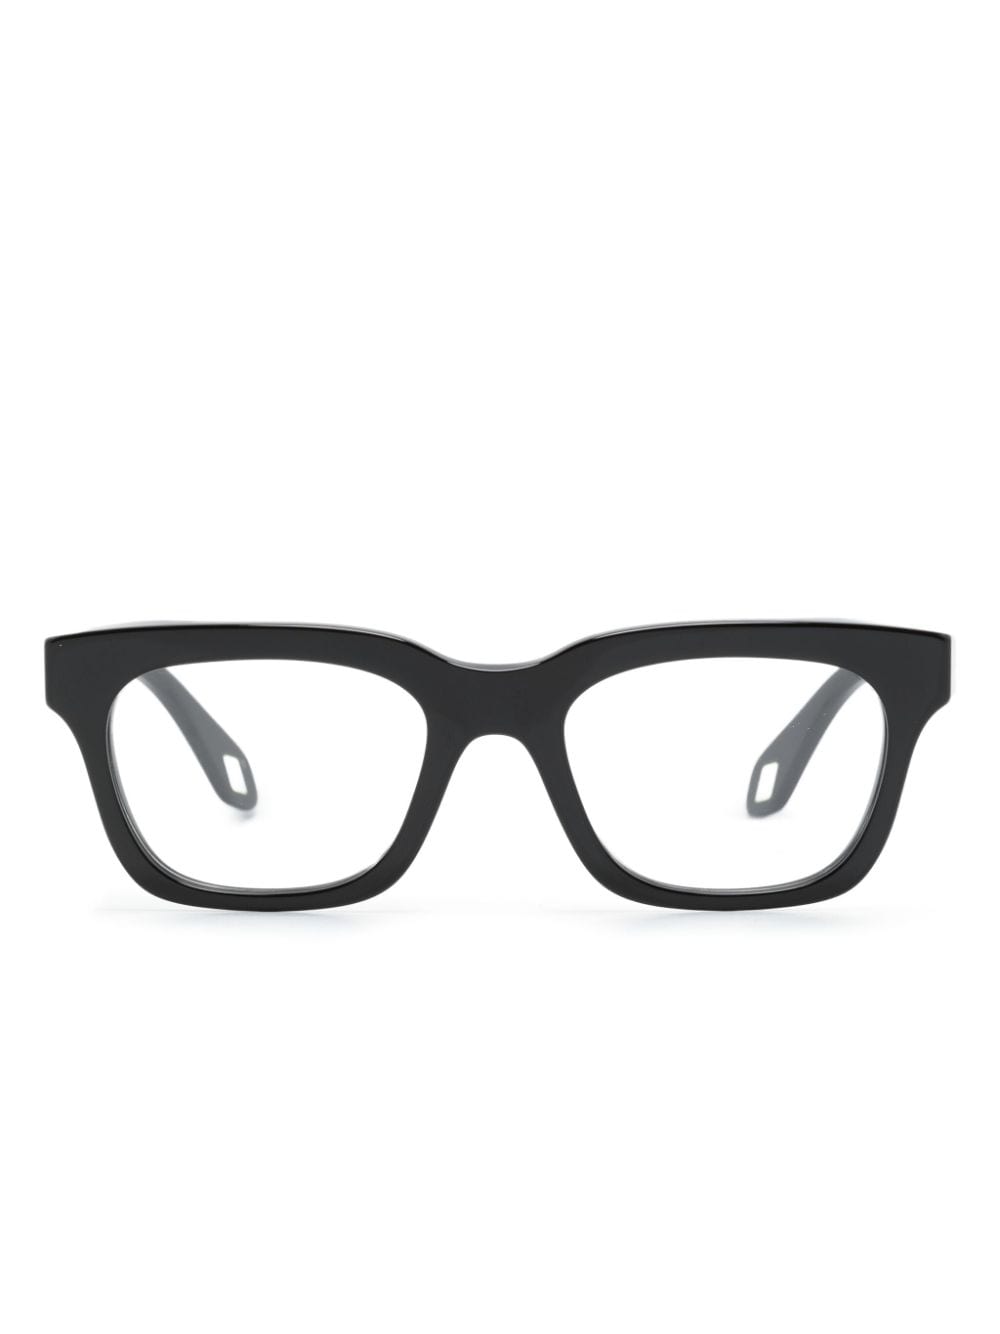 Giorgio Armani Square-frame Glasses In Black